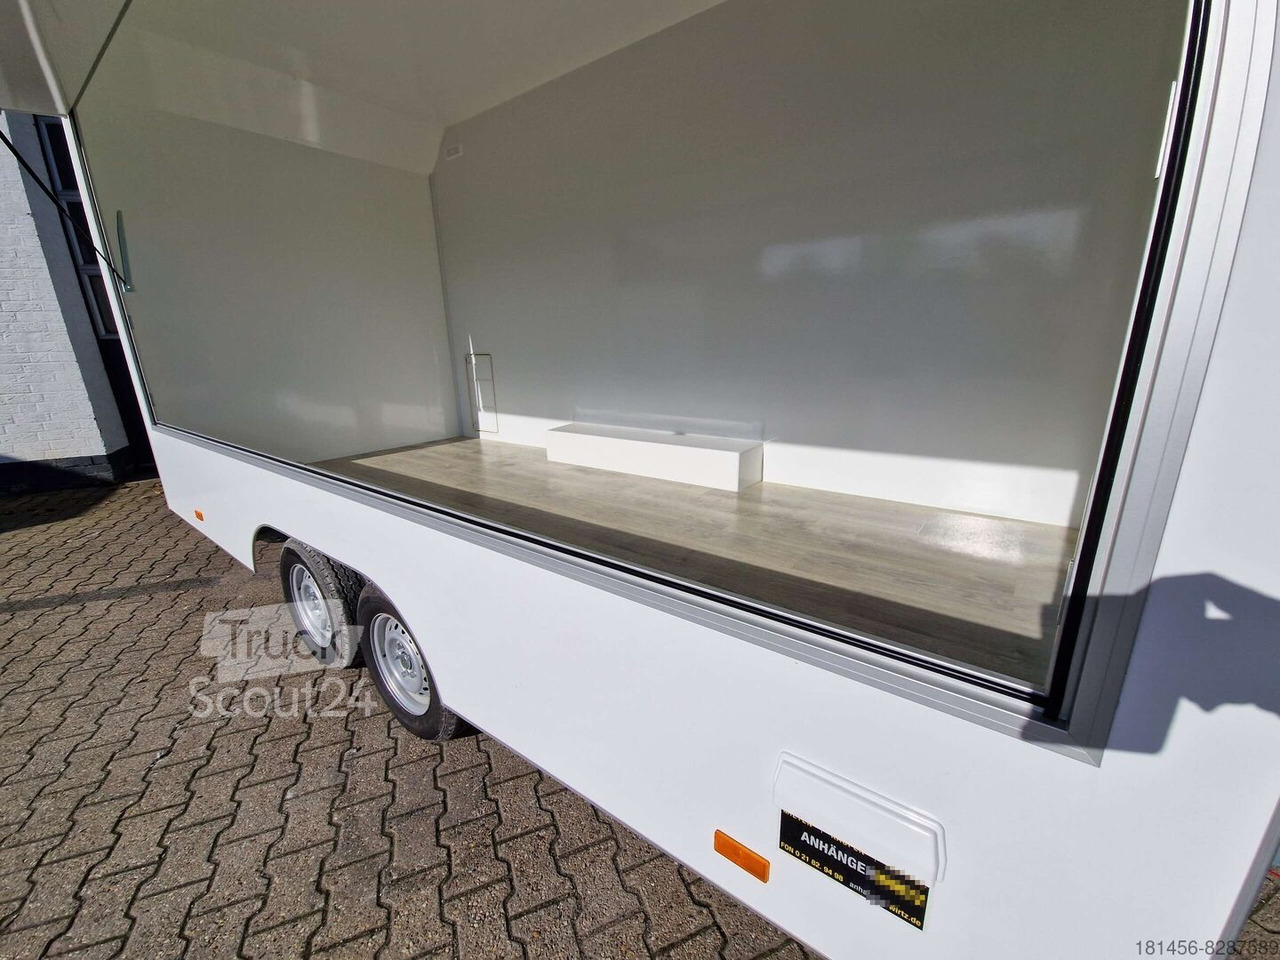 Ny Försäljningsvagn Aero Retro Verkaufsanhänger Leerwagen für diy Ausbau 420x200x230cm sofort: bild 12